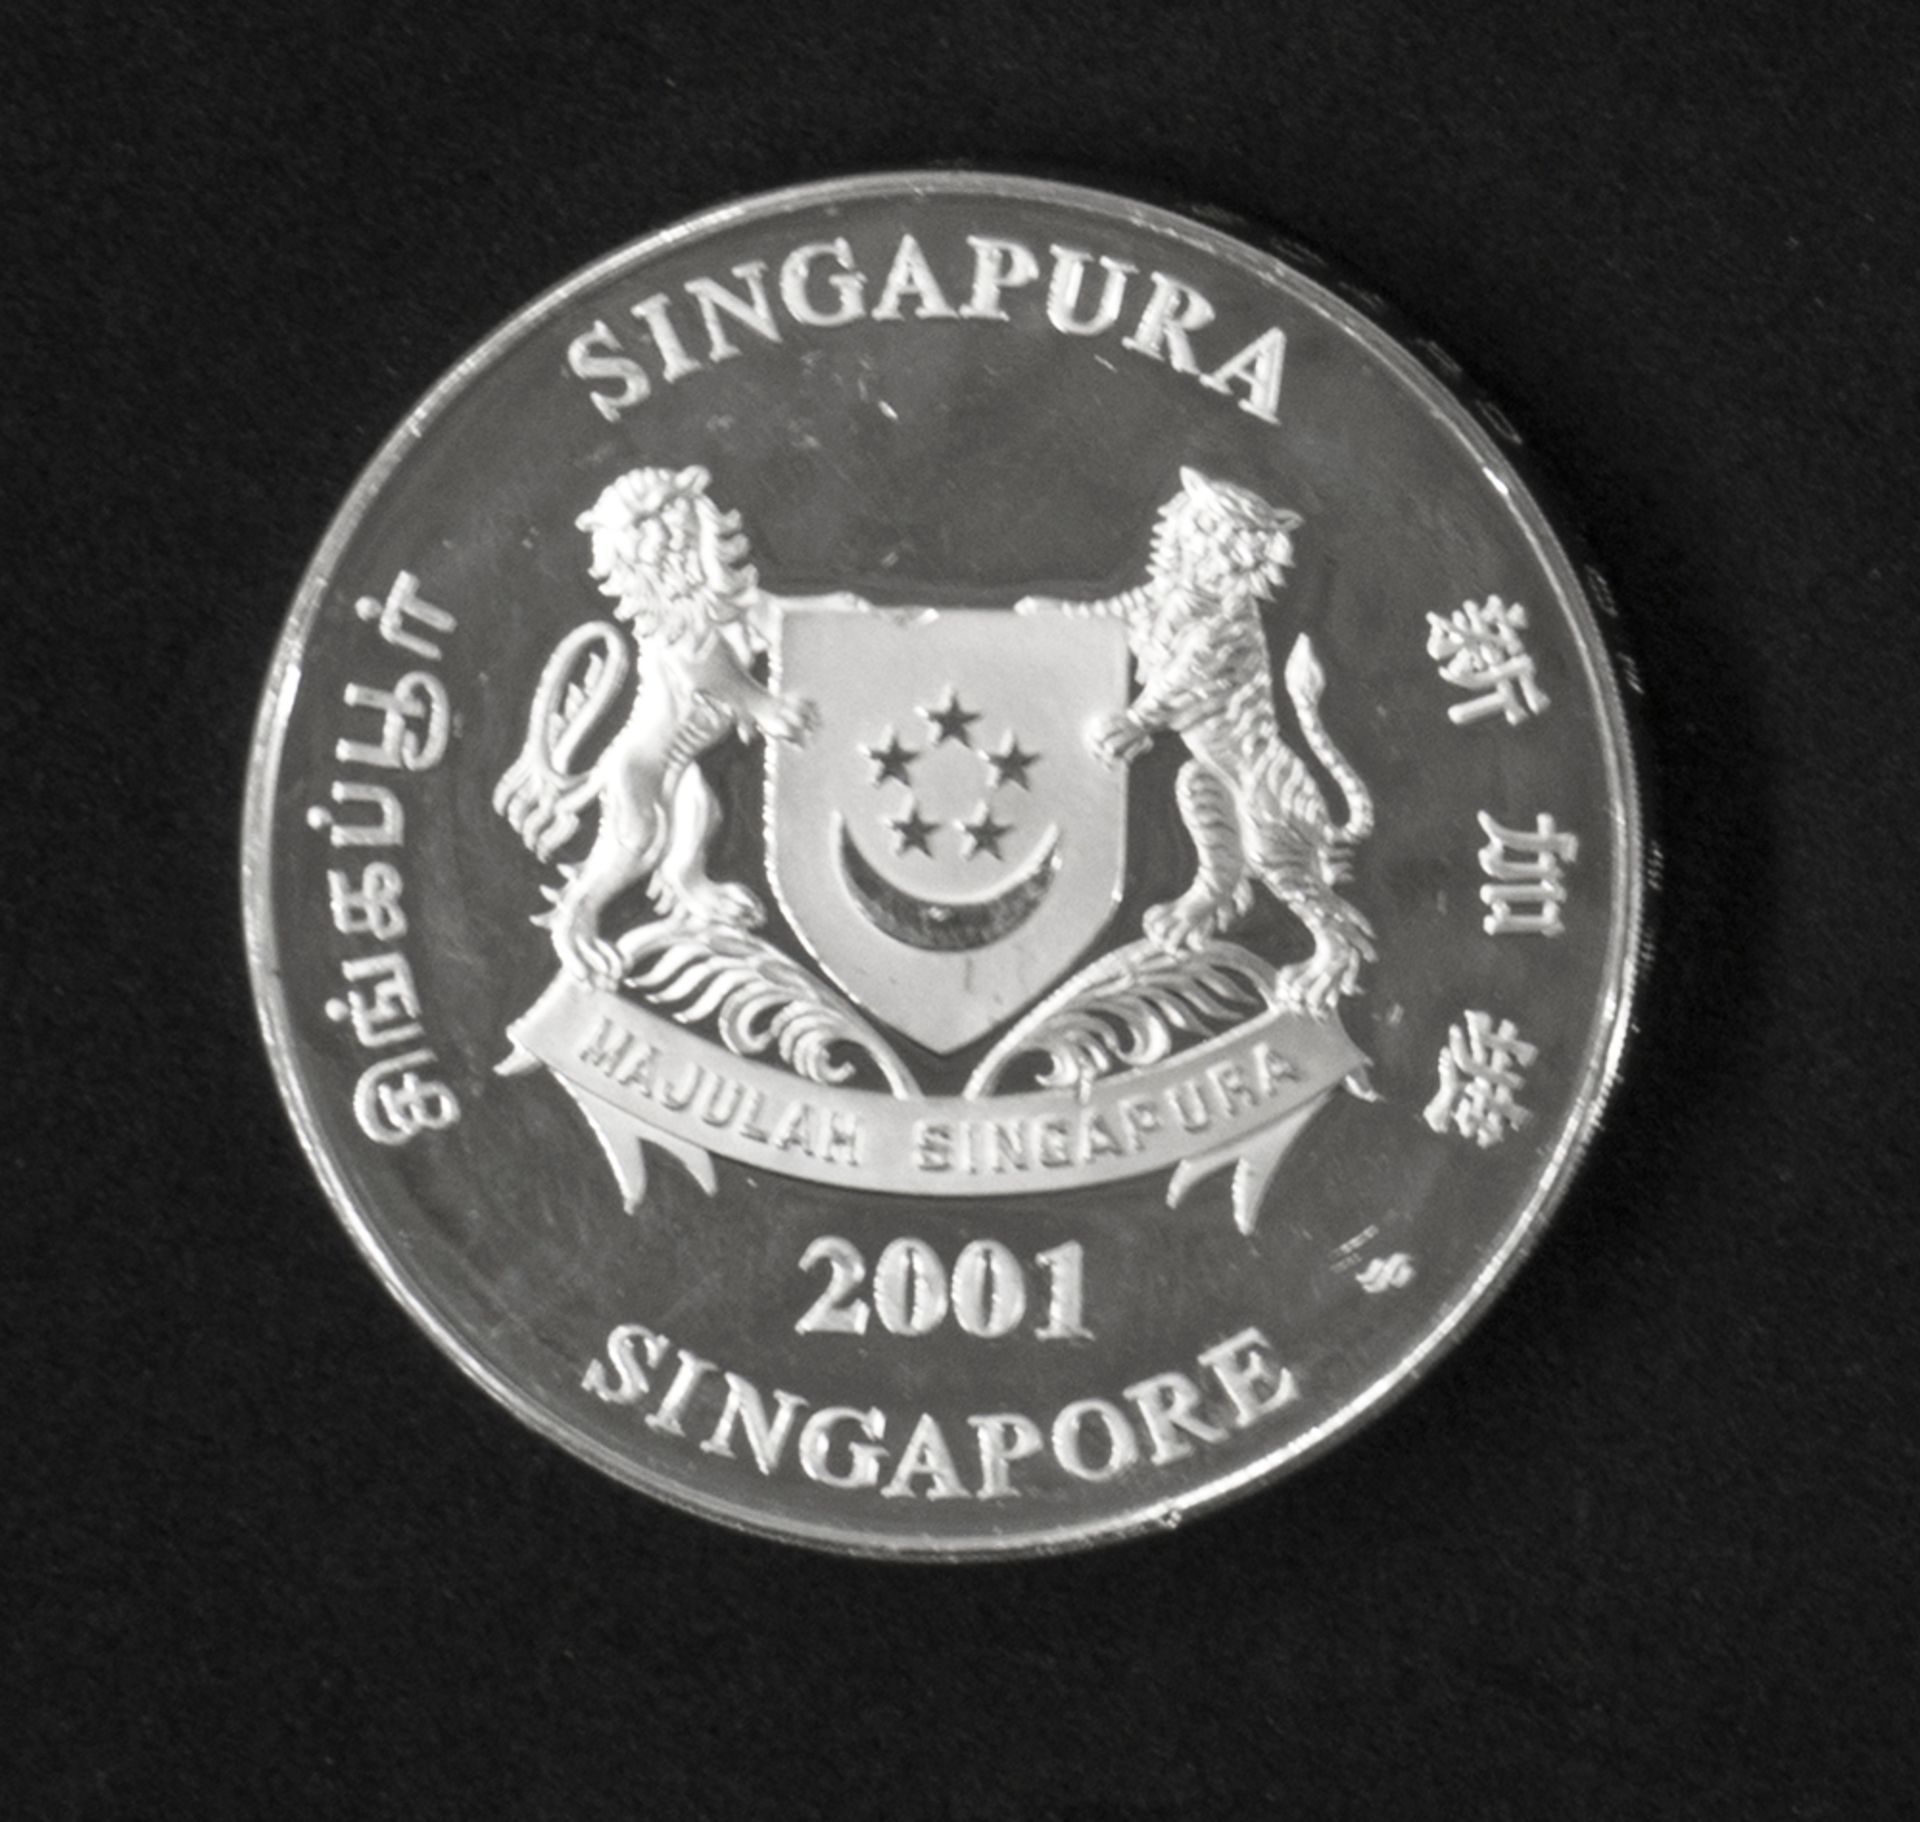 Singapur 2001, 10 Dollar - Silbermünze "Jahr der Schlange". Silber 999. KM 180. Erhaltung: PP. - Image 2 of 2